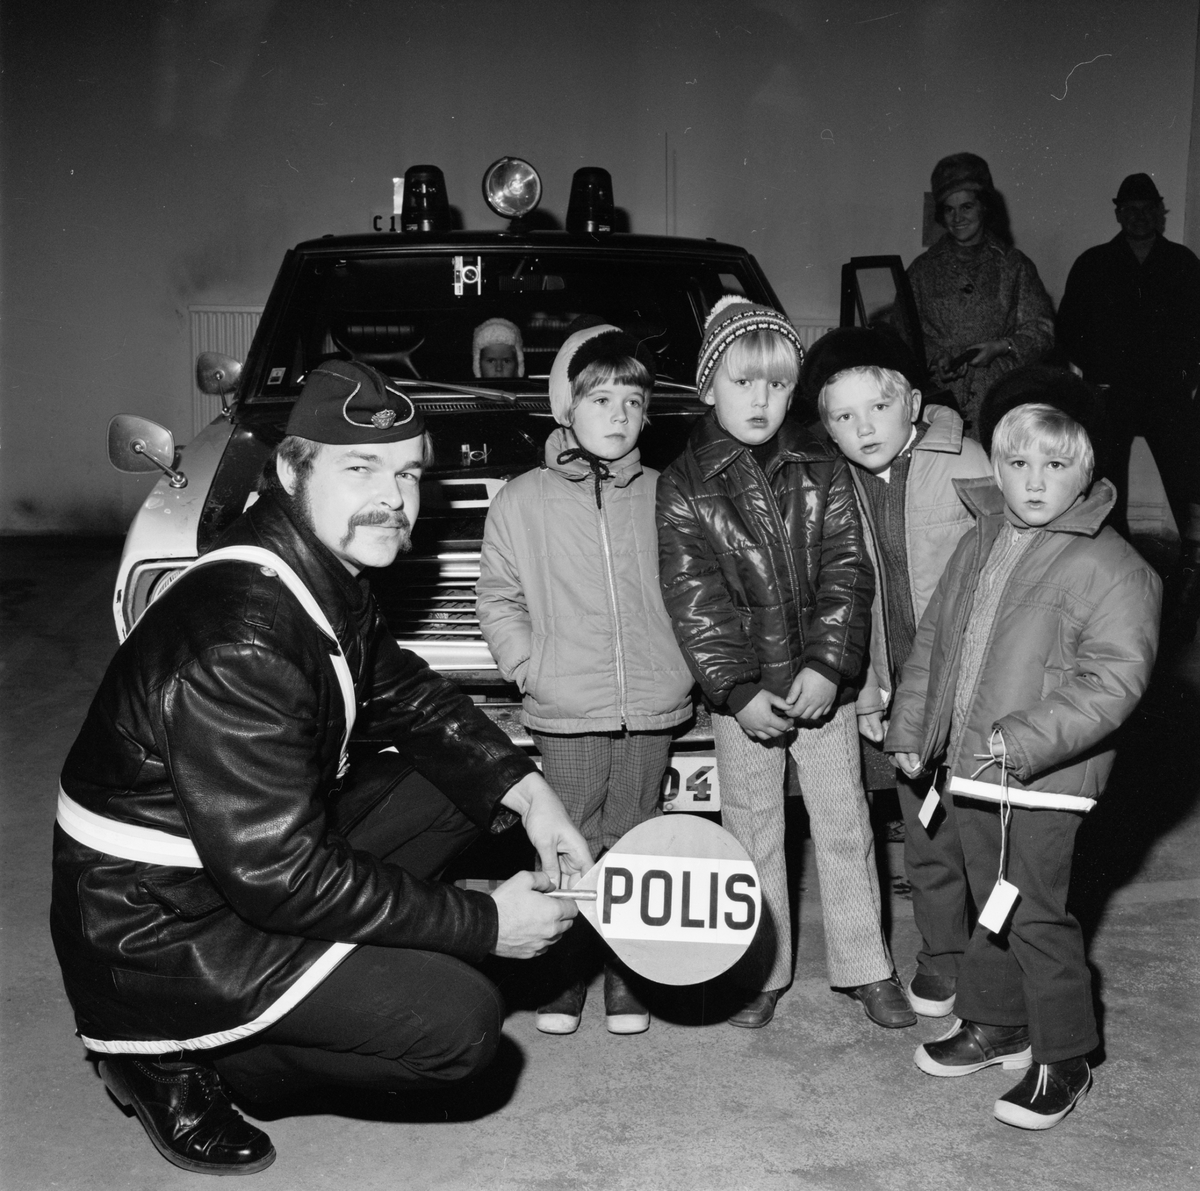 Trafikskolefinal, polisbiltur och saftkalas, Tierp, Uppland, november 1971